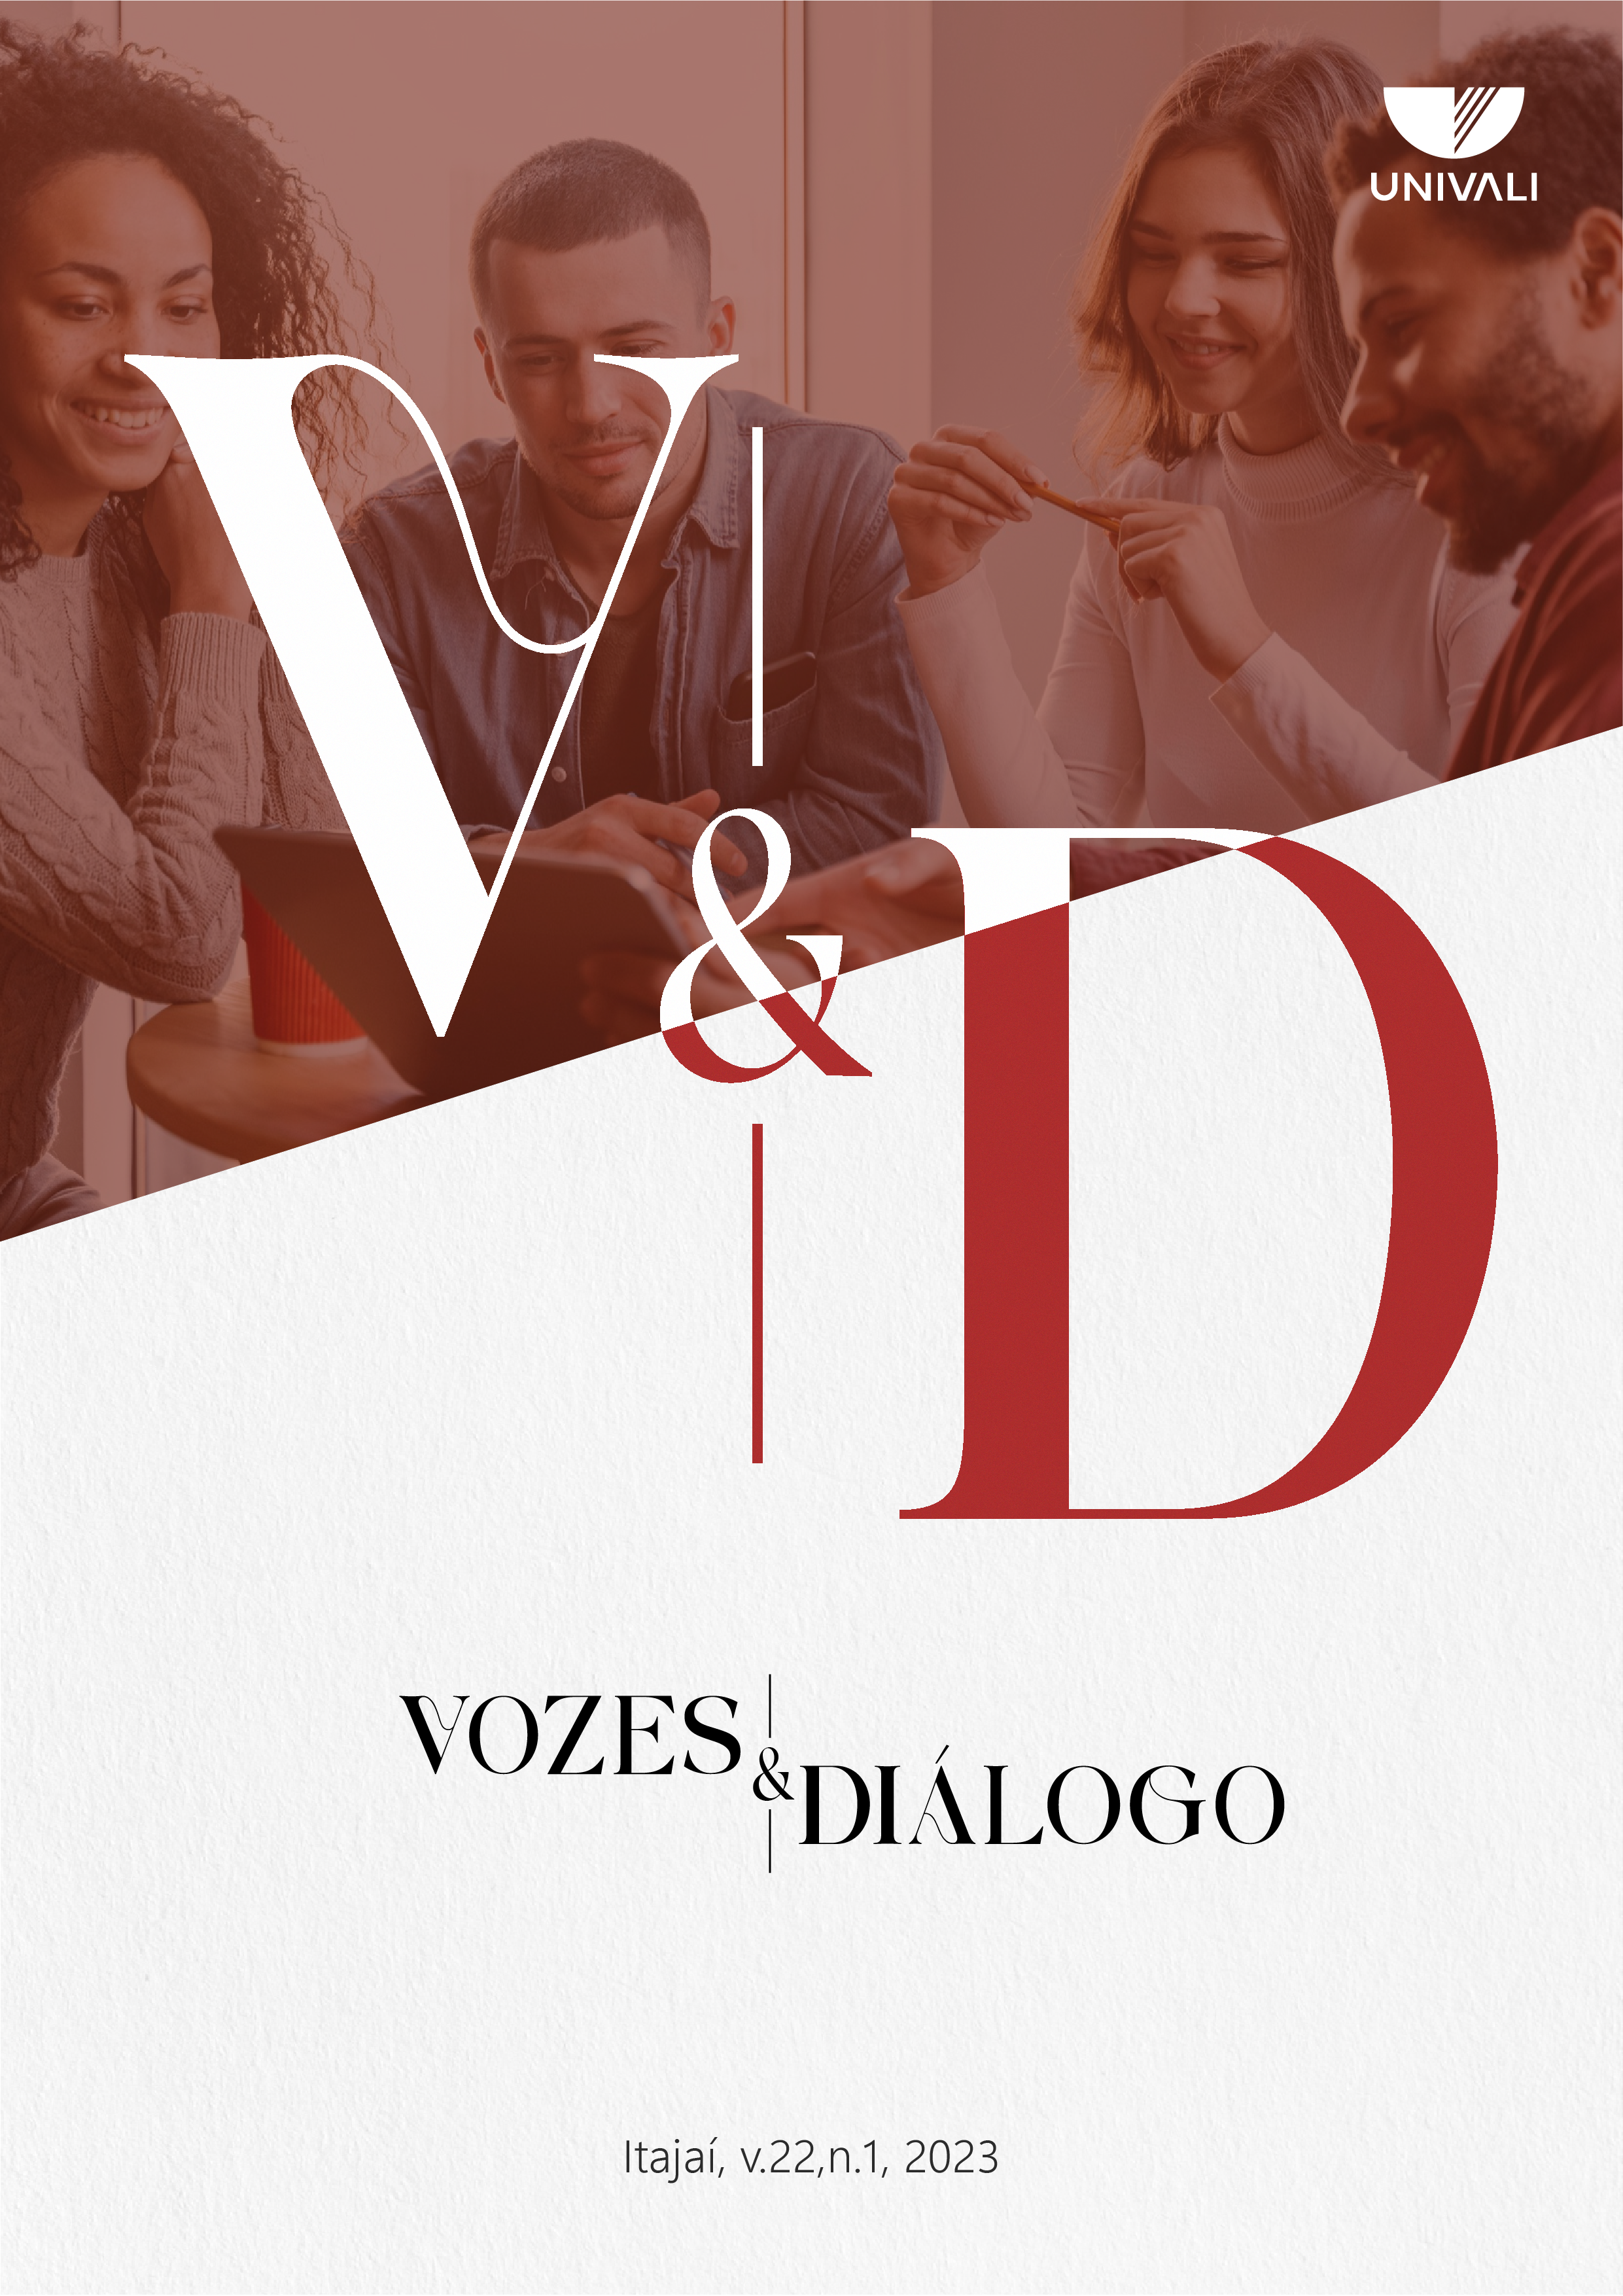 					Visualizar v. 22 n. 1 (2023): Revista Vozes e Diálogo
				